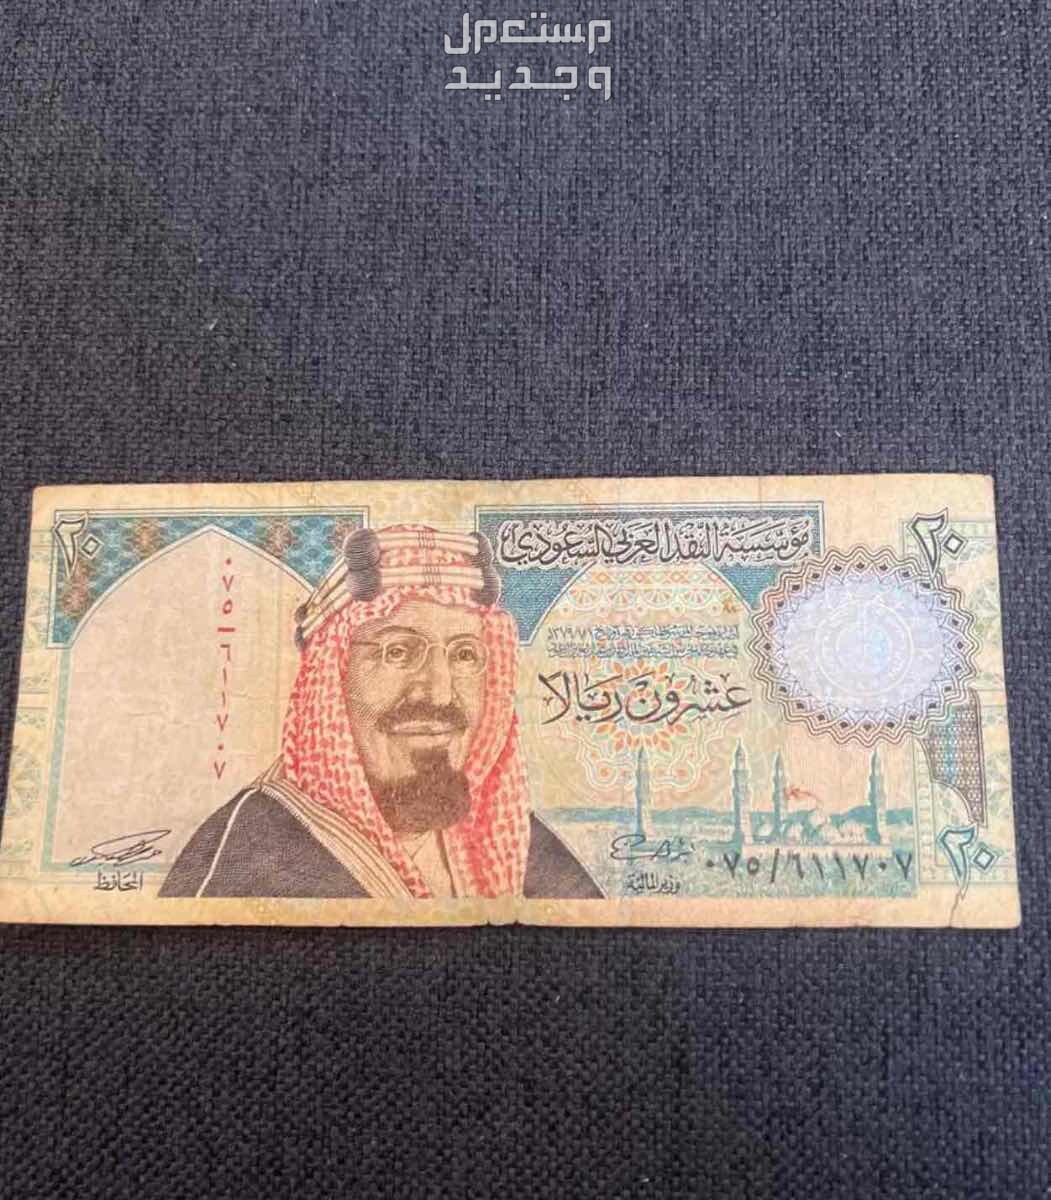 للبيع فلوس الملك فهد رحمه الله من( فئة العشرين) في جدة بسعر 200 ريال سعودي